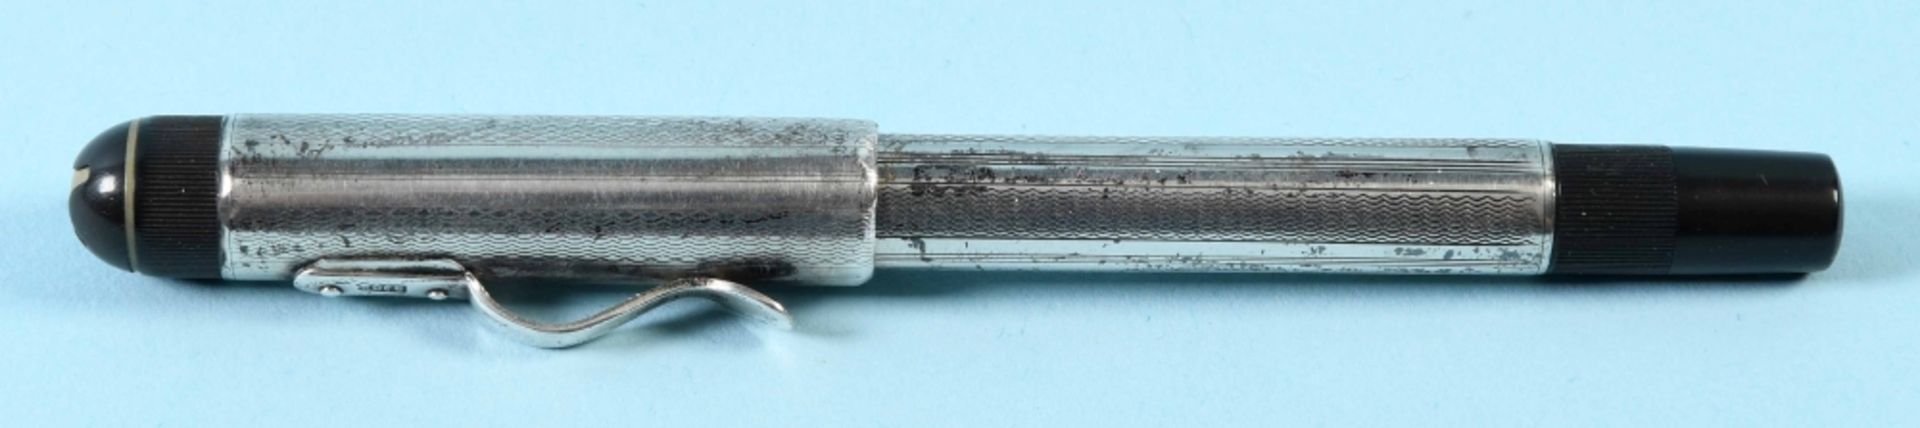 Füllfederhalter, 3 Stück und 1 Kugelschreiber - Image 2 of 8